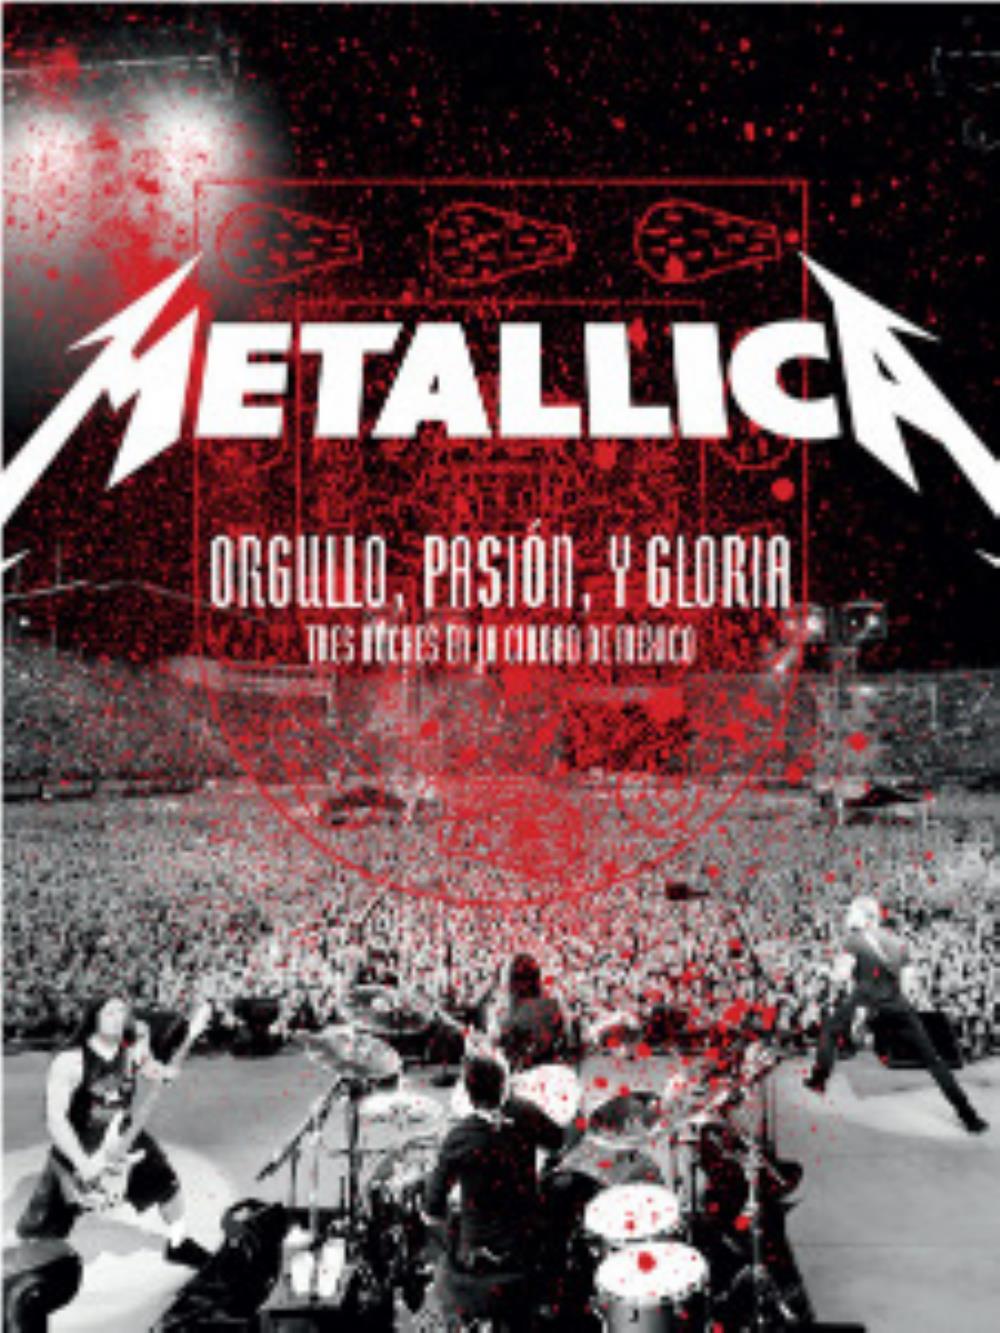 Metallica Orgullo, pasin y gloria: Tres noches en la Ciudad de Mxico album cover